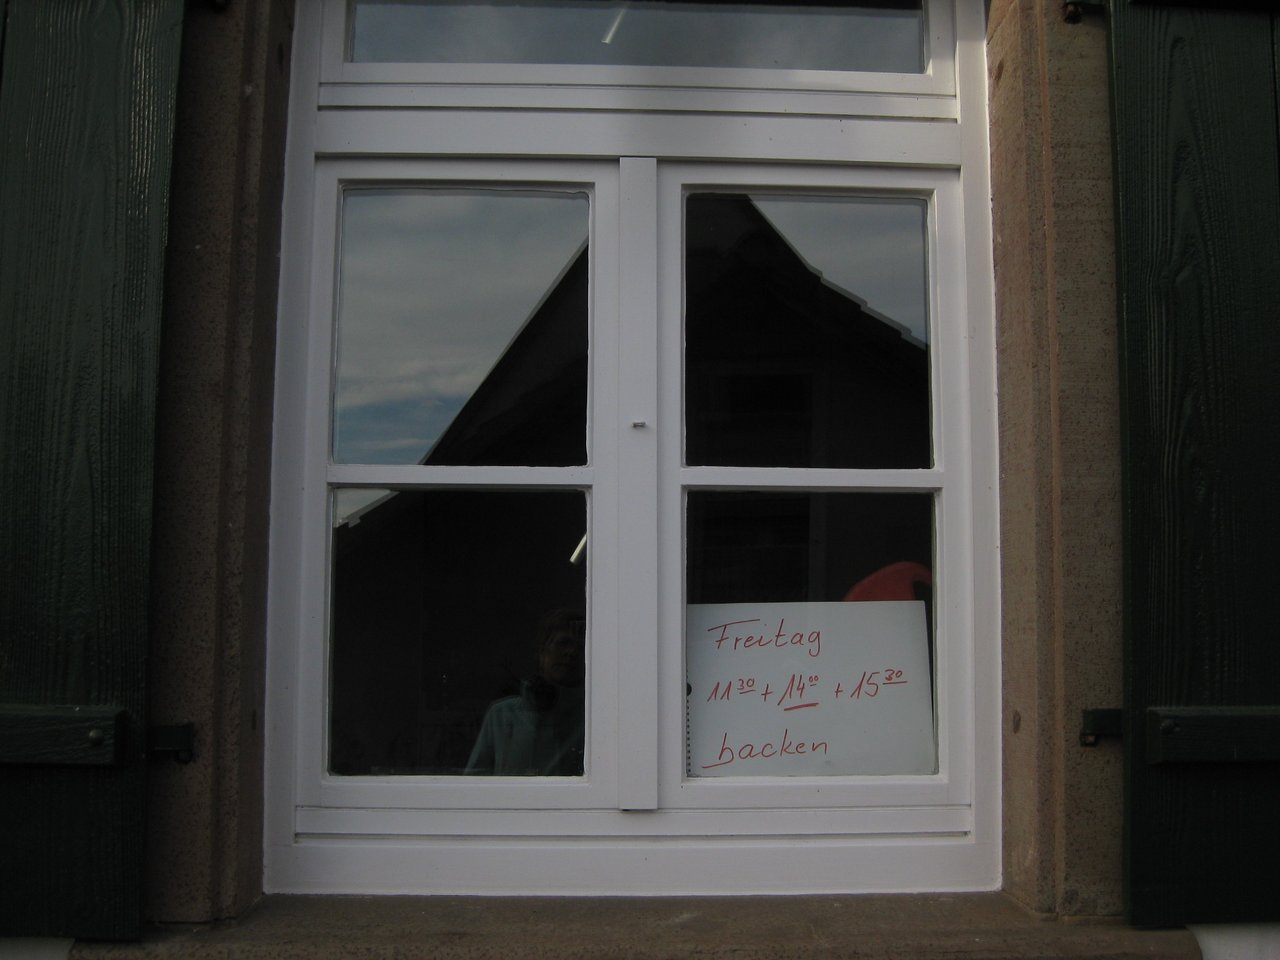 Nahaufnahme eines Fensters des Backhauses in Wiesenstetten mit den Öffnungszeiten. Freitag 11:30 Uhr, 14:00 Uhr und 15:30 Uhr - das Bild mit Klick vergrößern